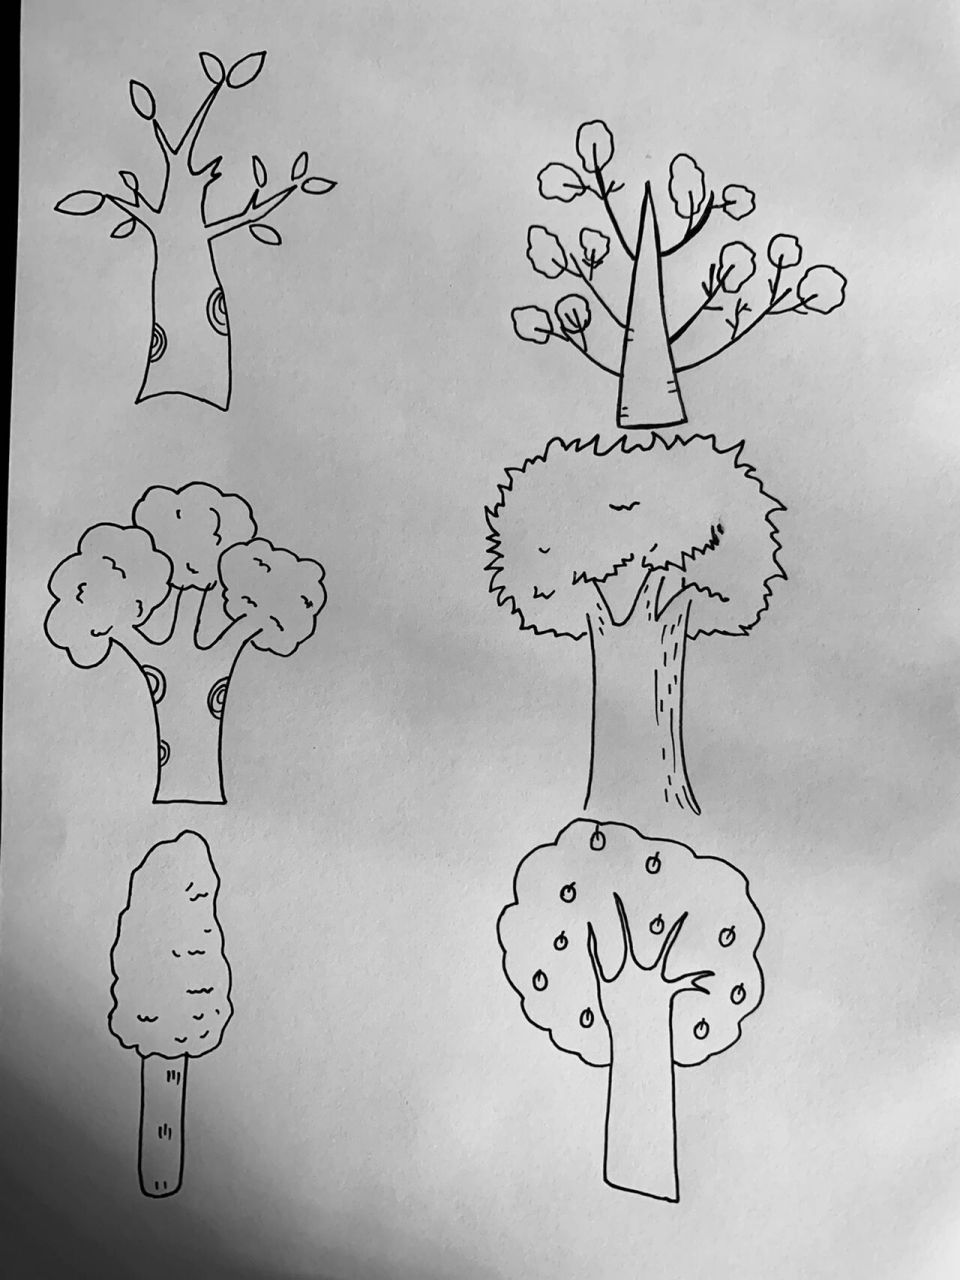 怎样画树简单又漂亮图片